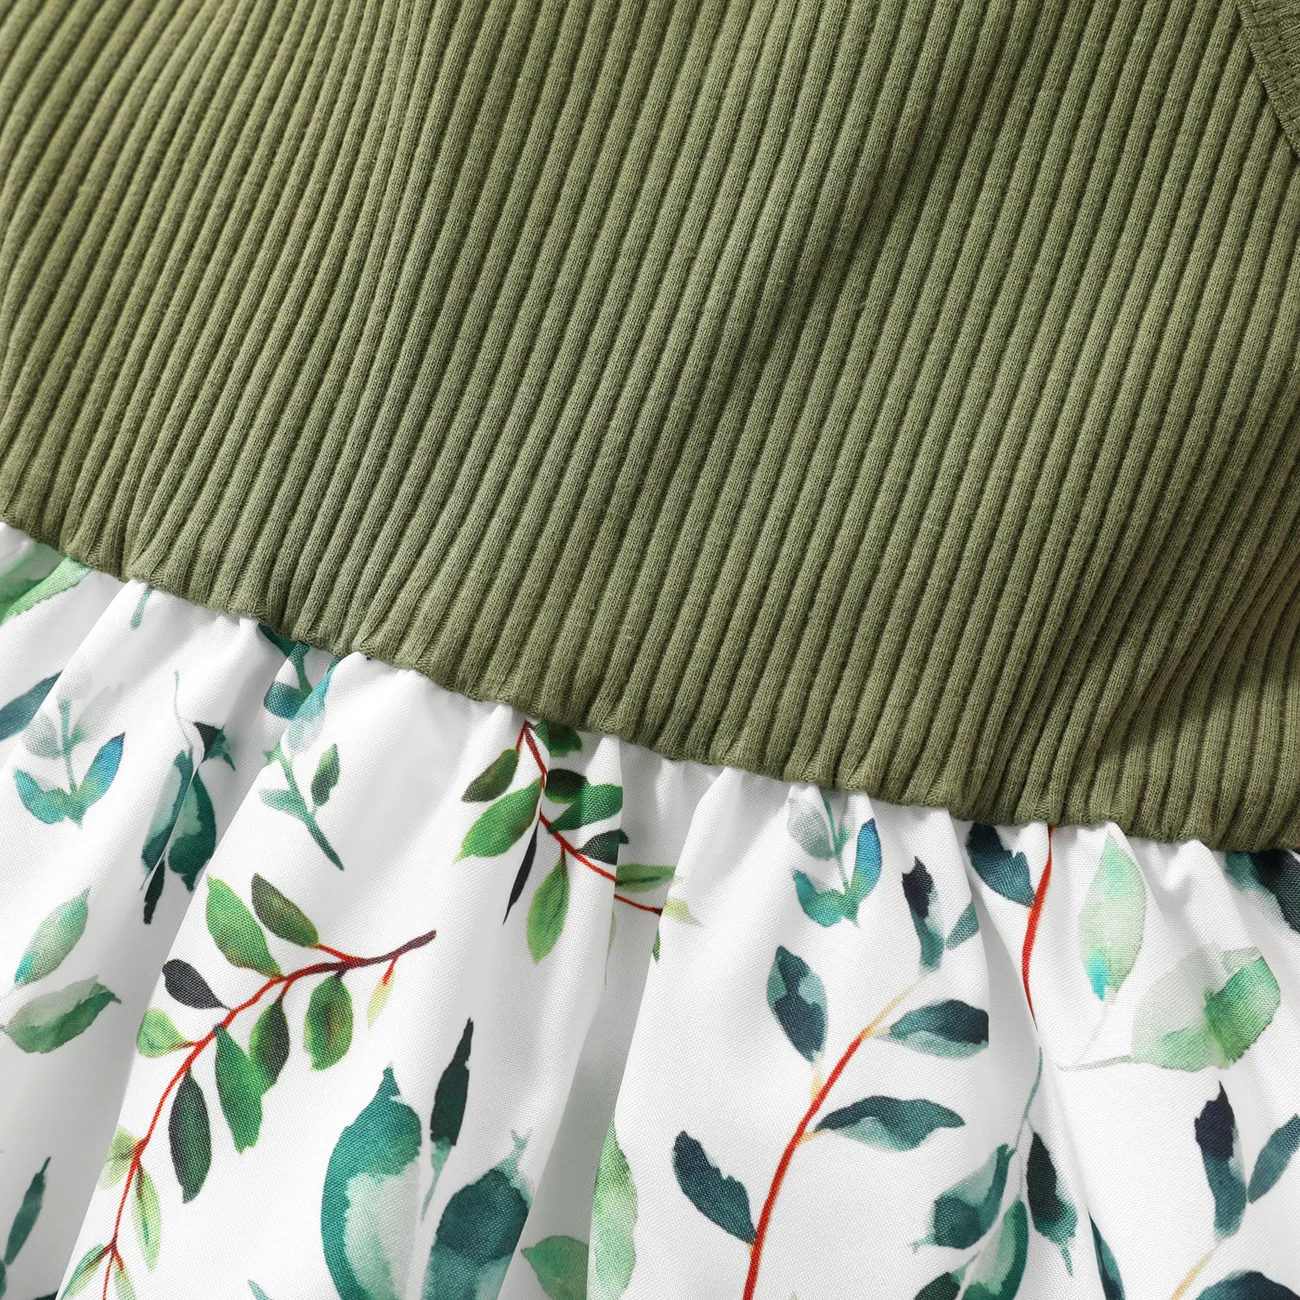 طفل فتاة فراشة / الأزهار طباعة bowknot تصميم لصق فستان كامي ربيع اخضر big image 1